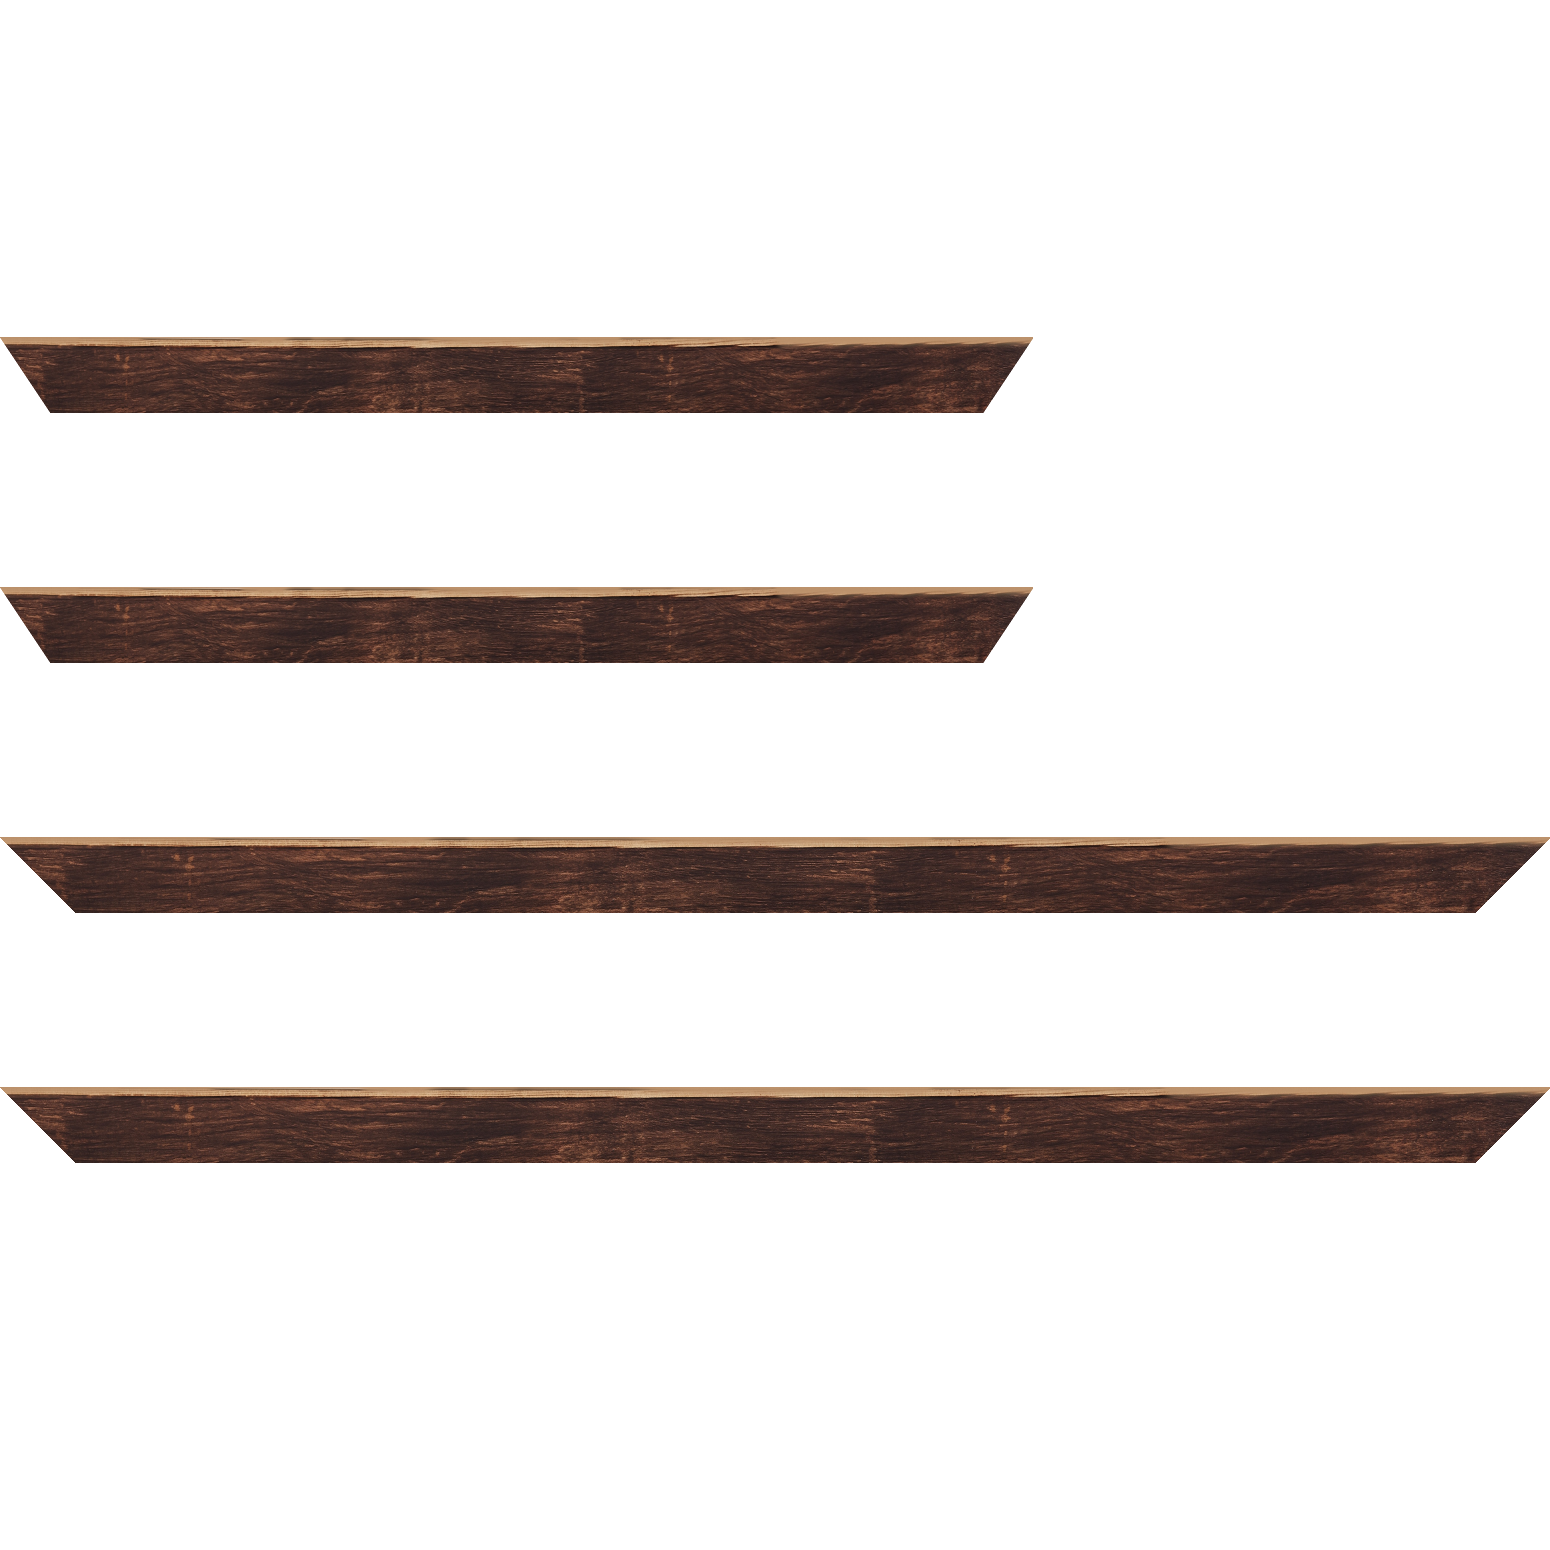 Baguette bois profil arrondi en pente plongeant largeur 2.4cm couleur marron effet ressuyé, angle du cadre extérieur filet naturel - 18x24